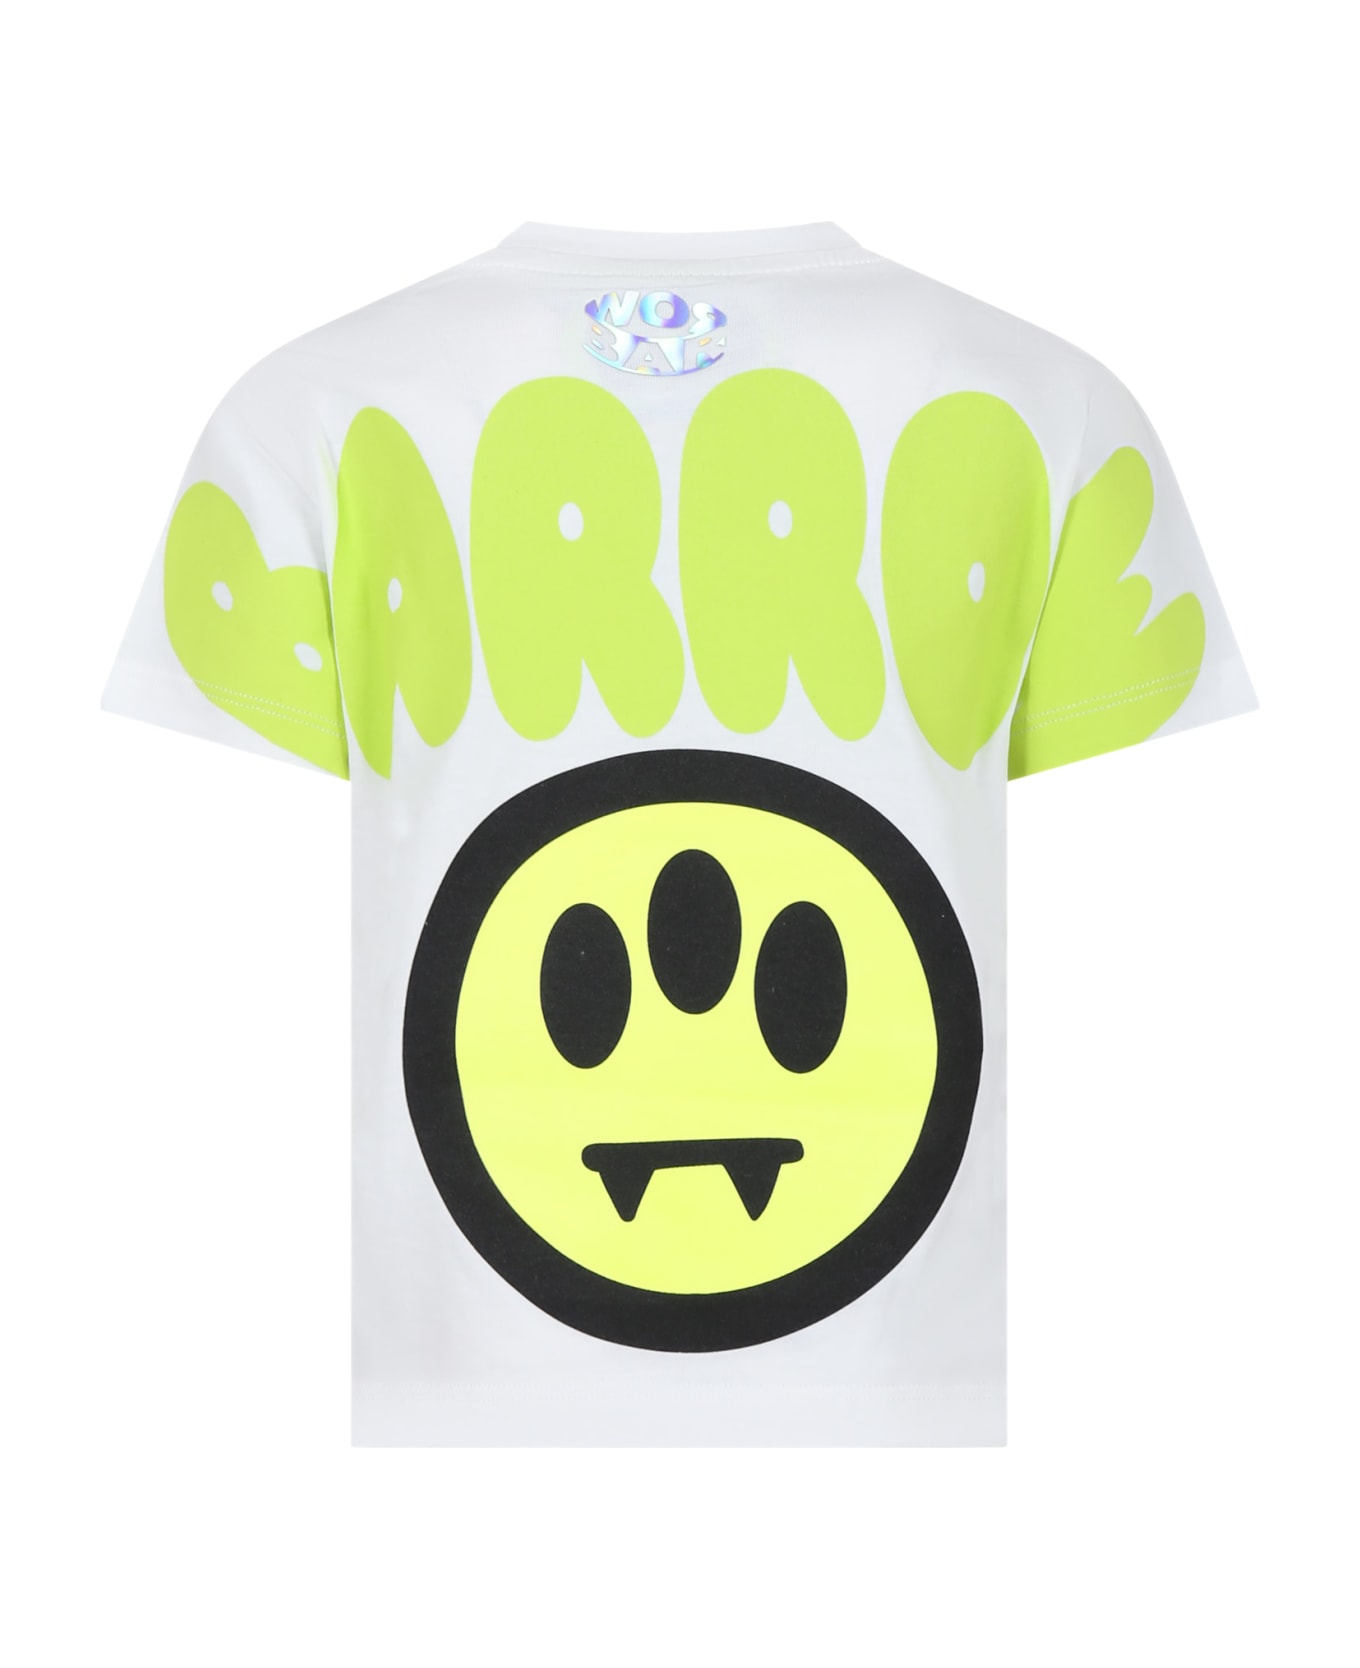 Barrow T-shirt Bianca Per Bambini Con Smile E Logo - Off white Tシャツ＆ポロシャツ